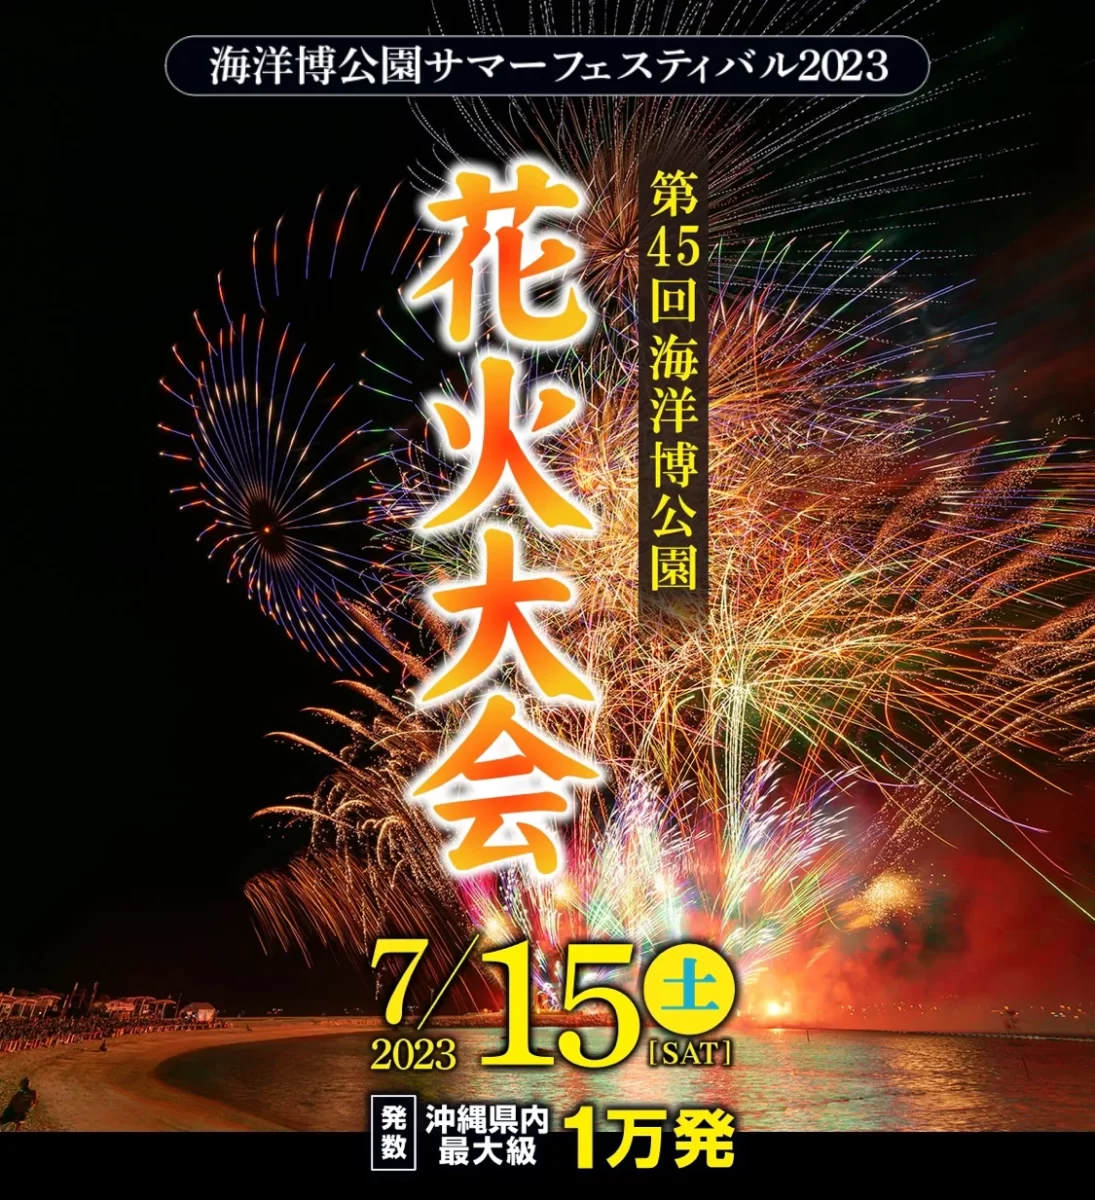 沖繩海洋博公園花火大會7月15日舉辦(花火將達到約1萬發規模)